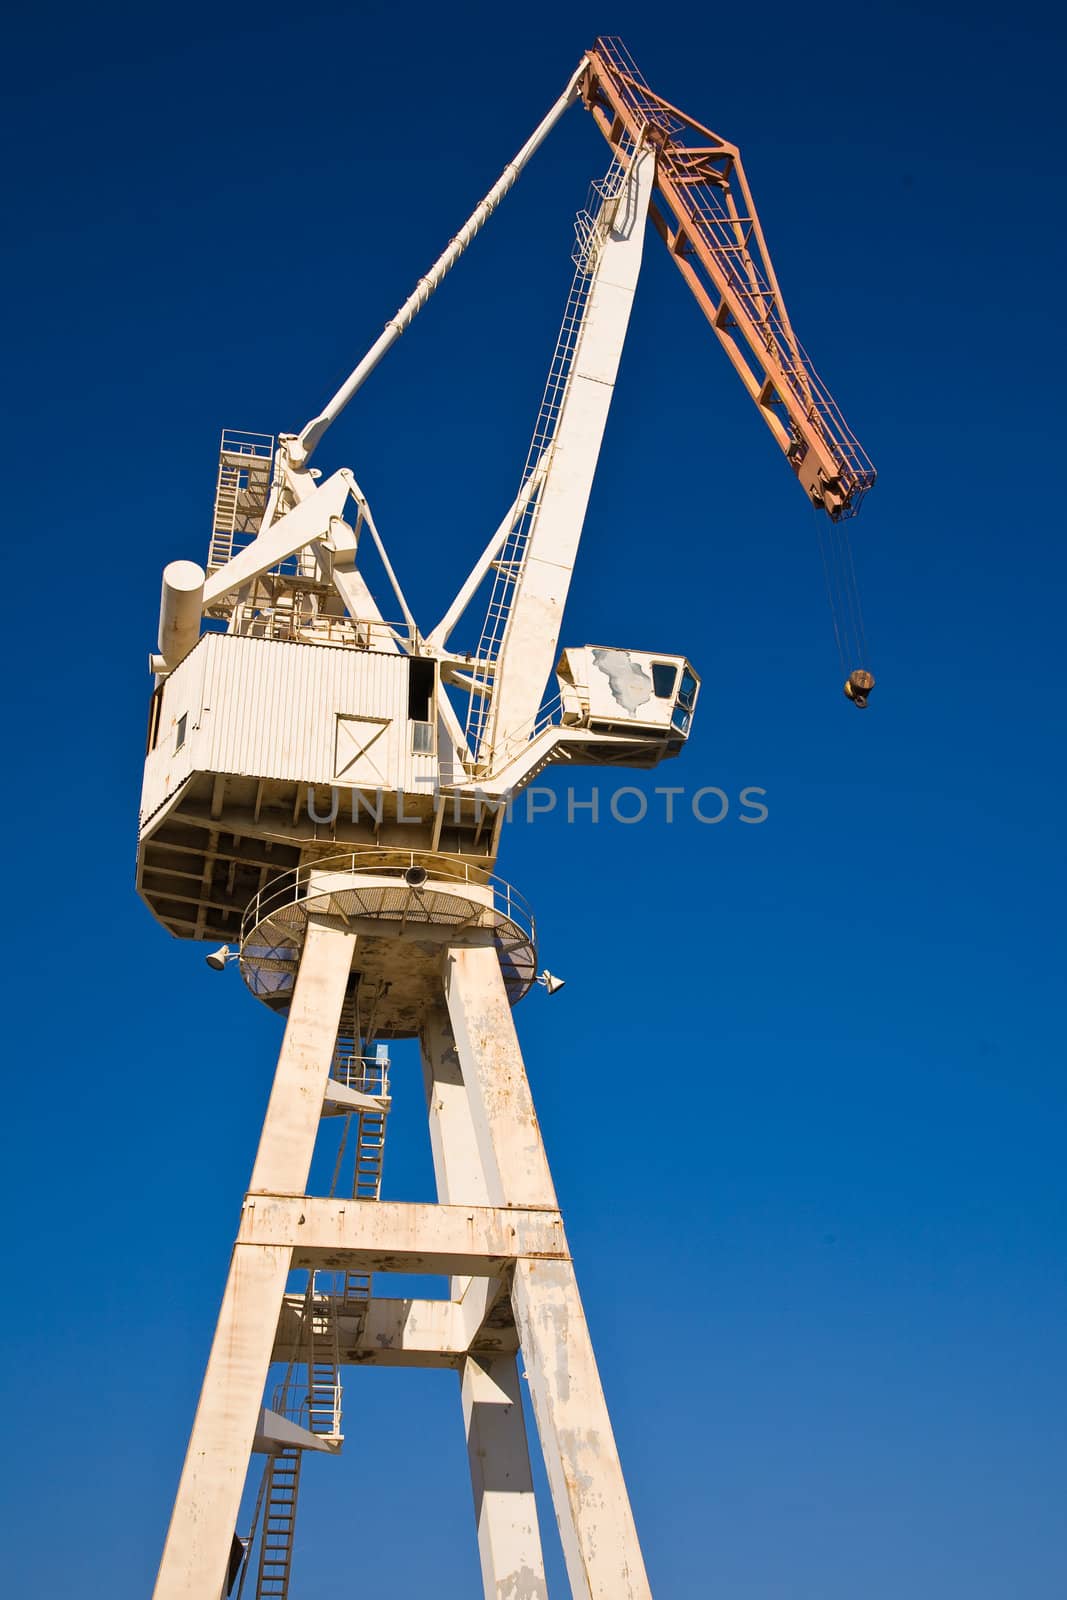 Big Crane in la ciotat - France 2009